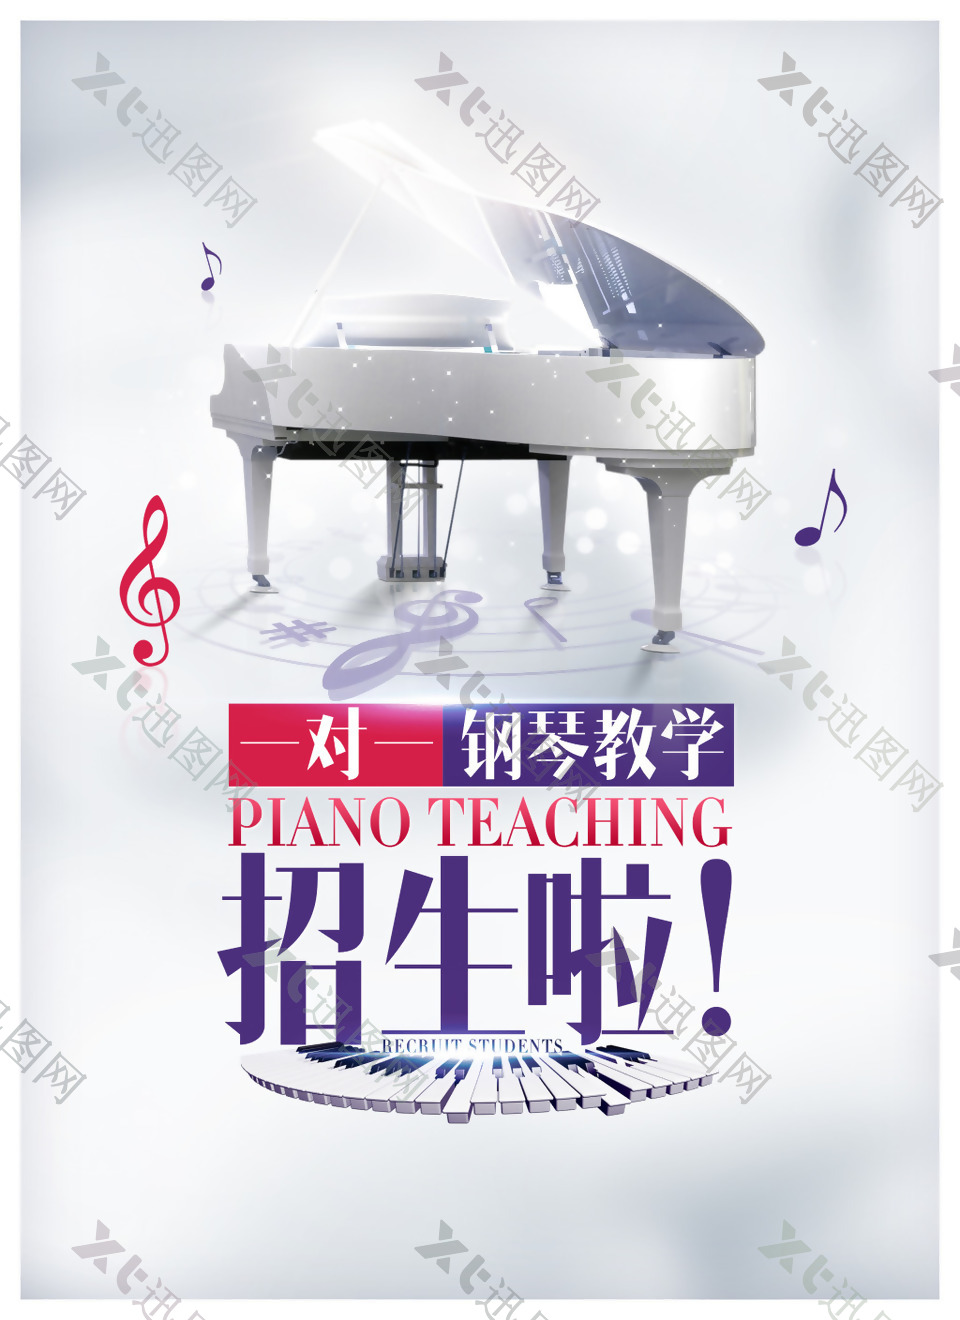 钢琴教学招生海报